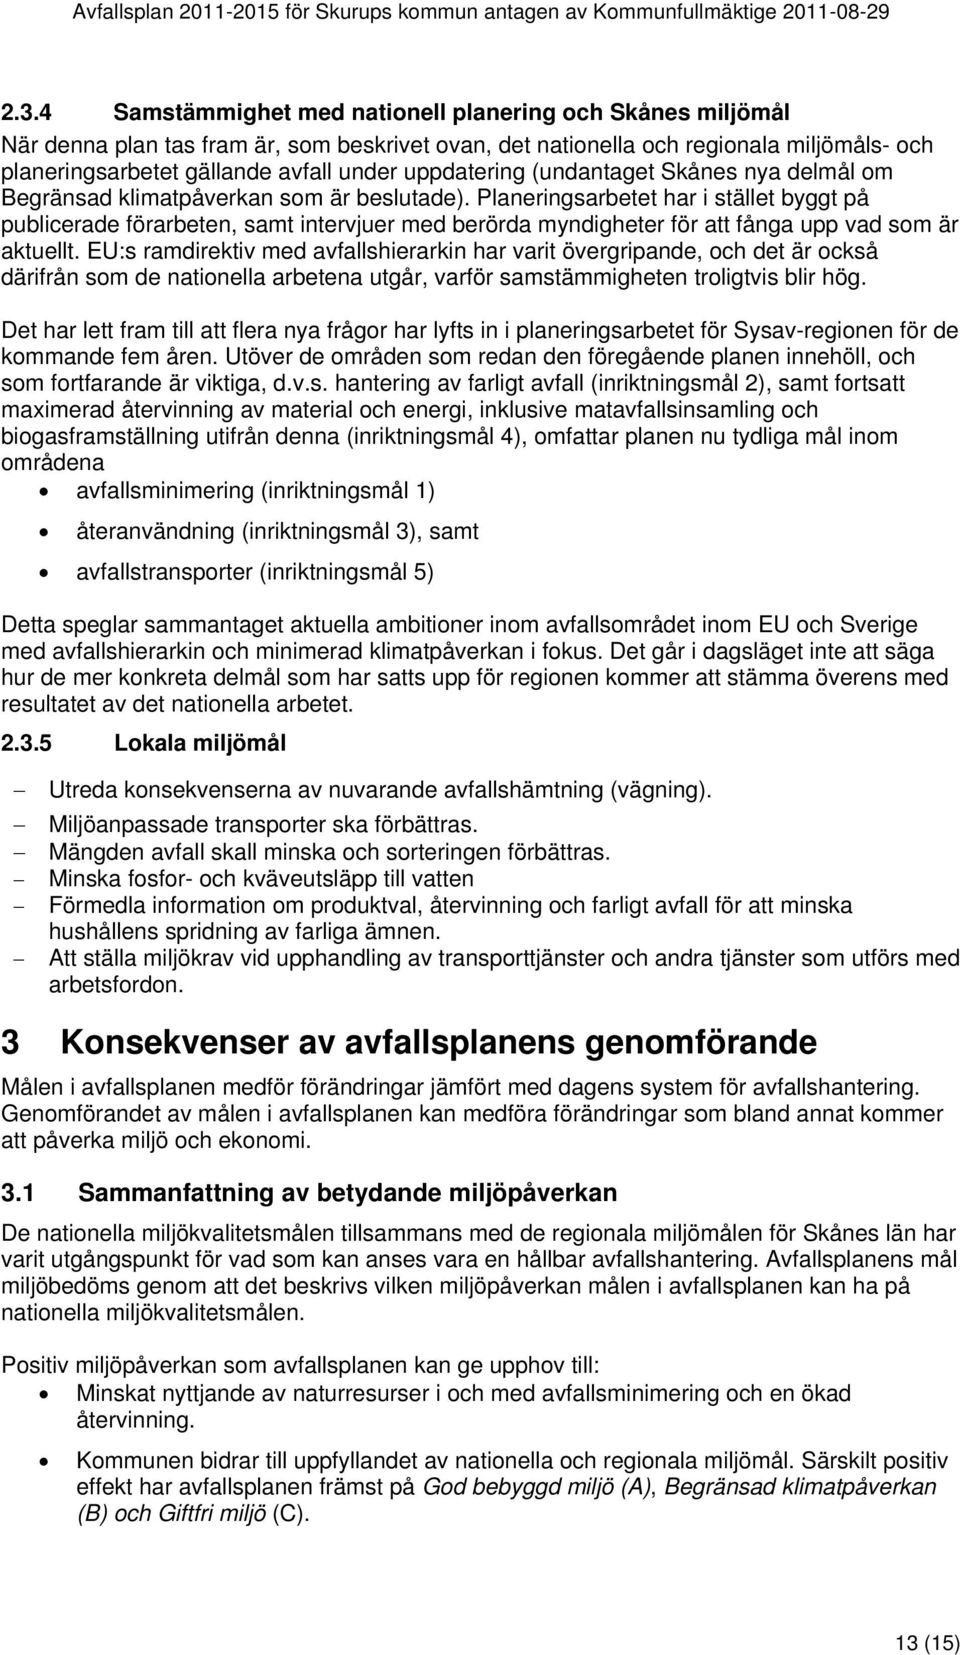 uppdatering (undantaget Skånes nya delmål om Begränsad klimatpåverkan som är beslutade).